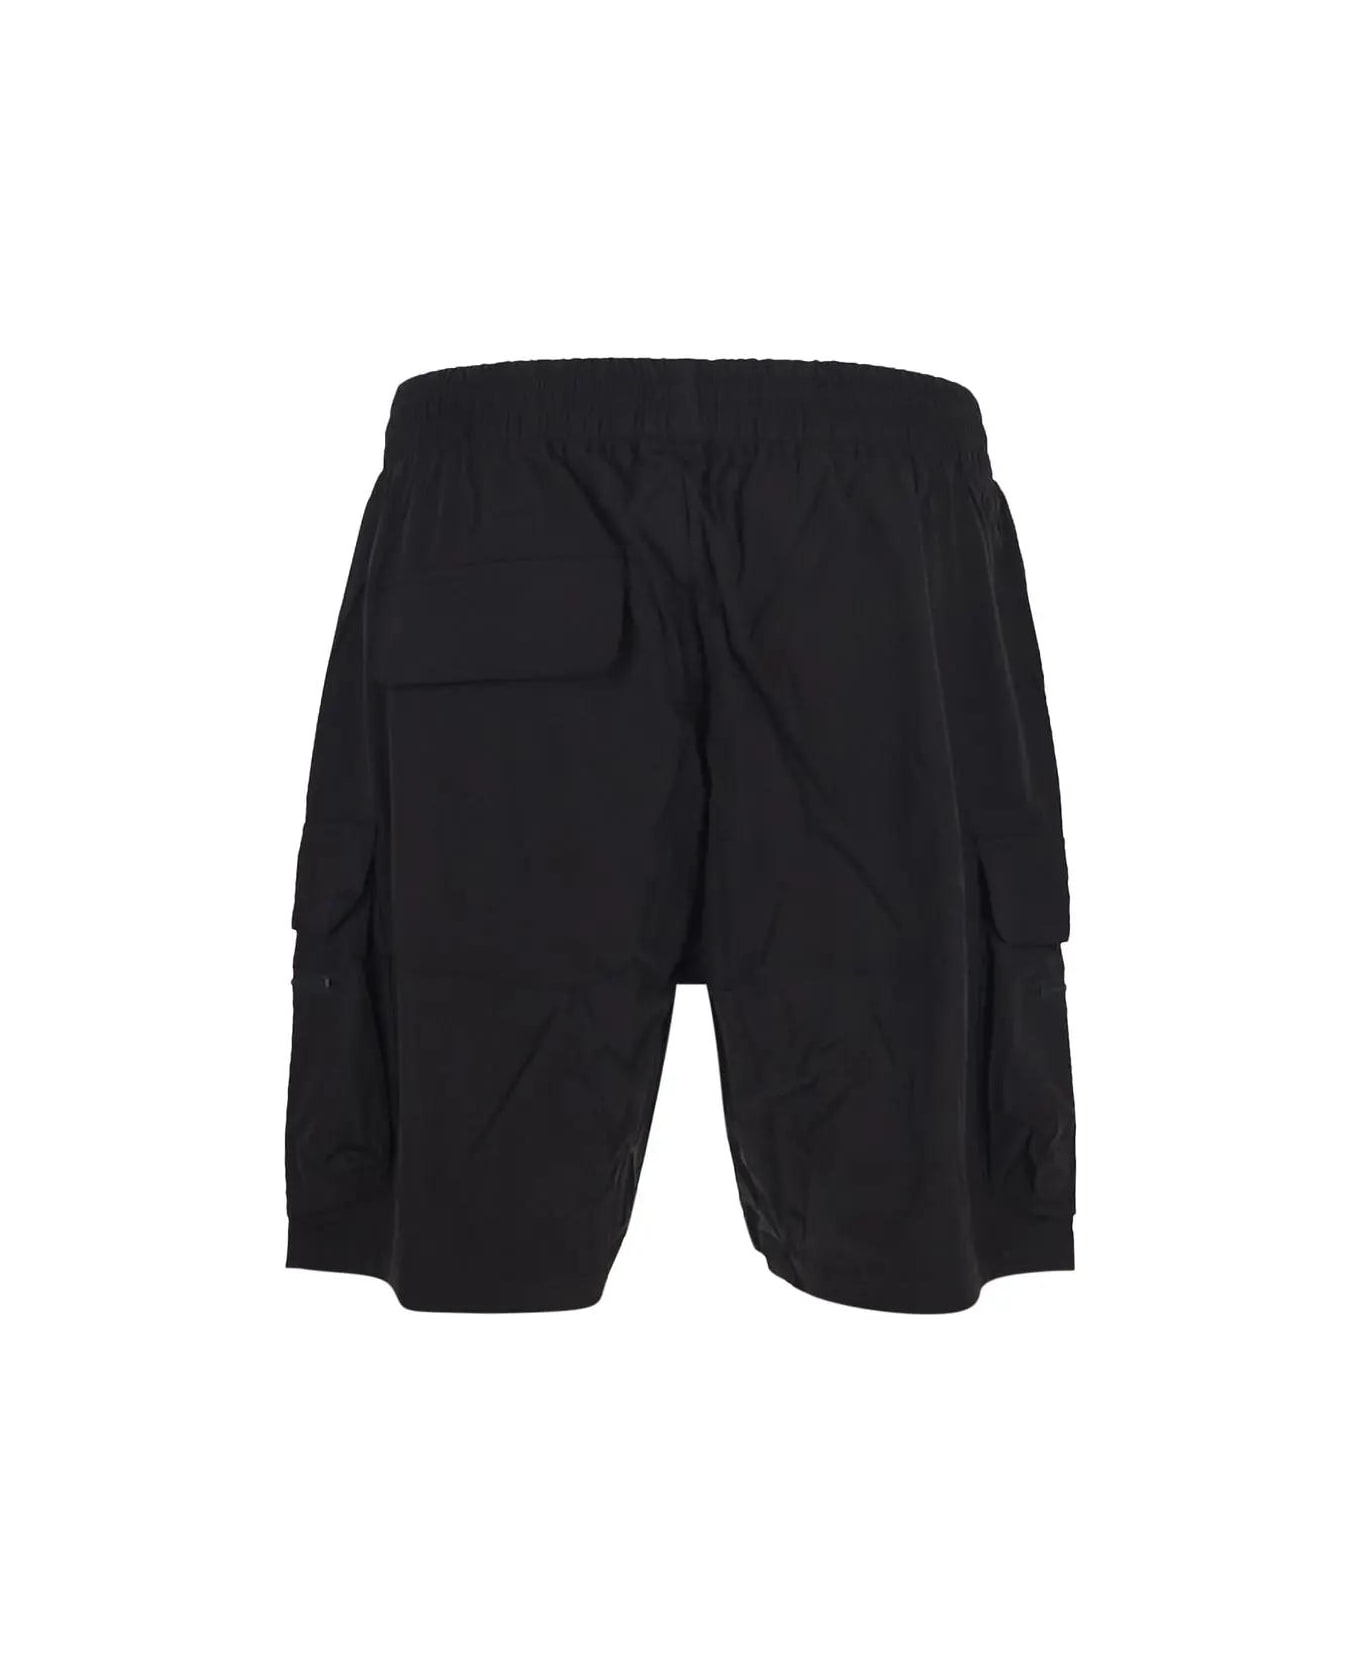 REPRESENT 247 Shorts - Black